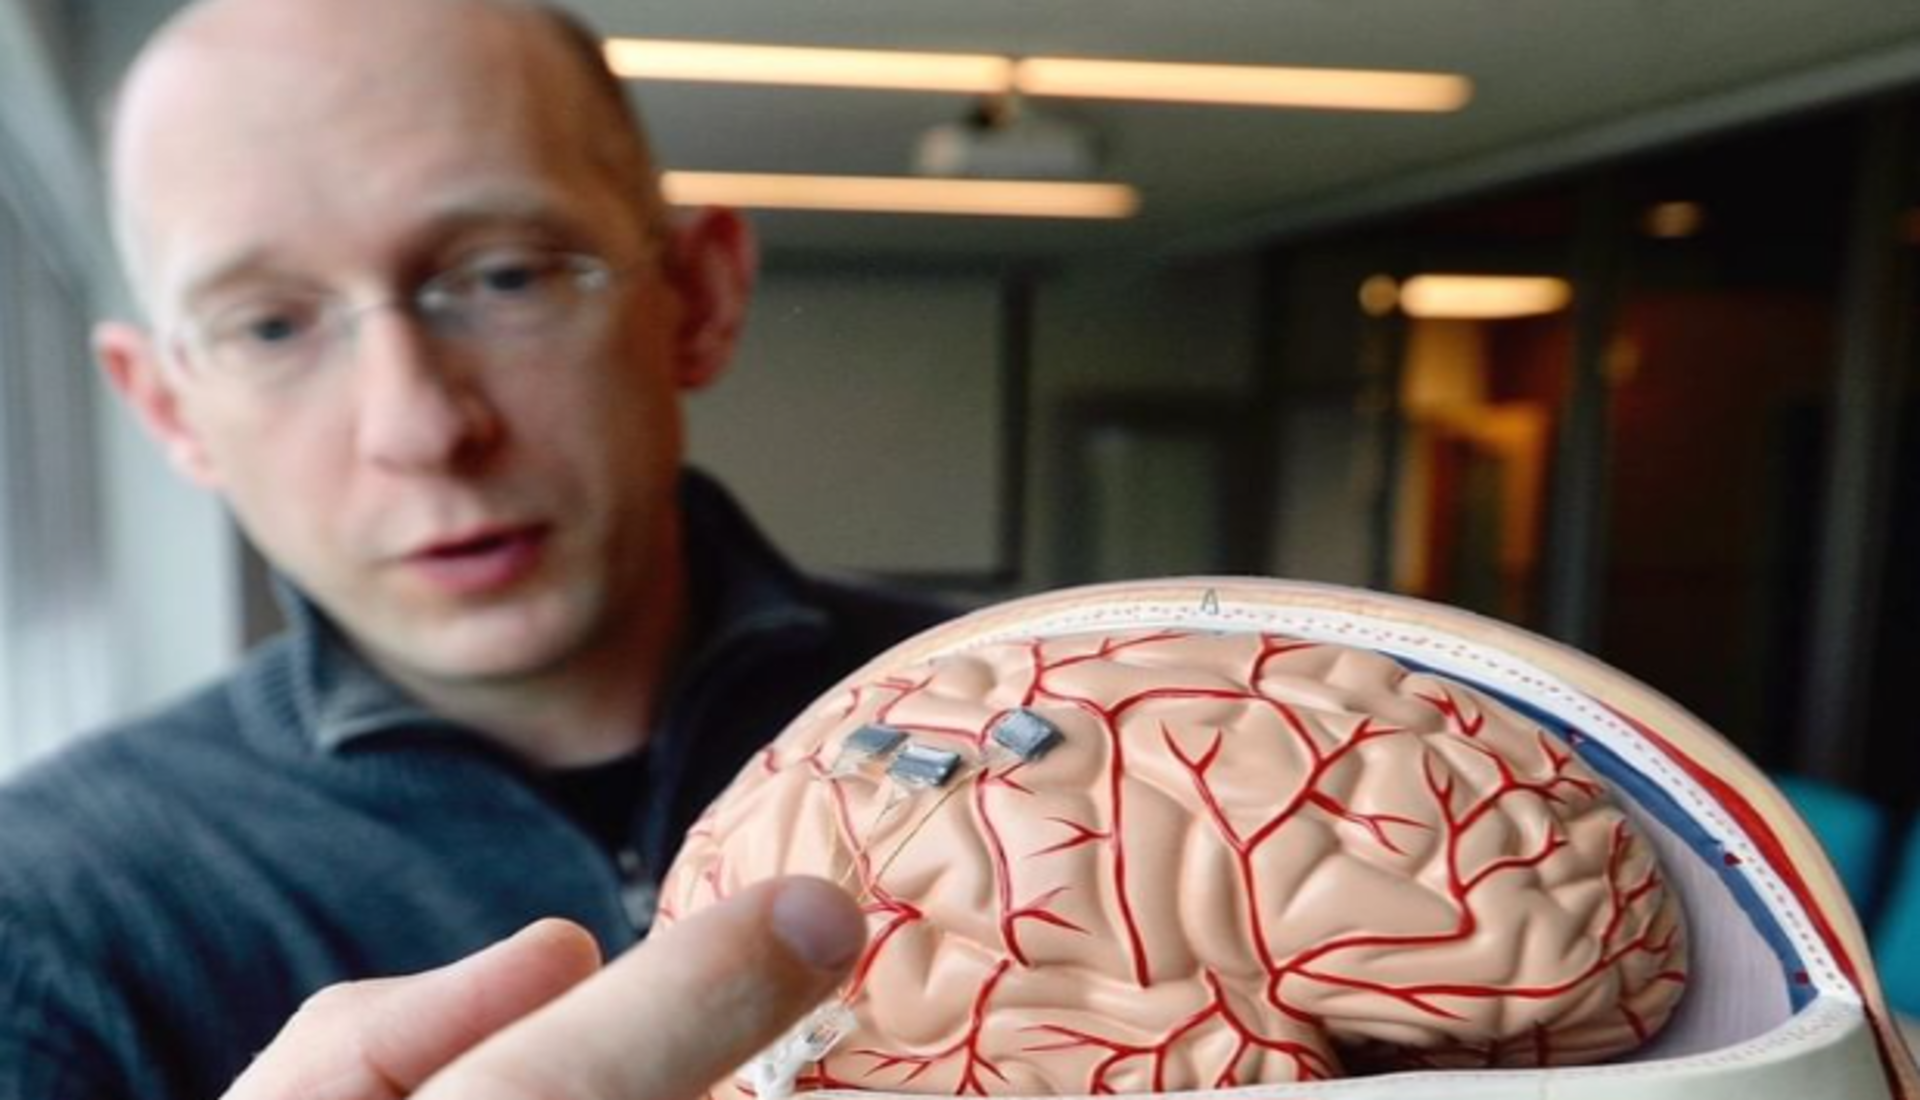 Aber Neuralink ist nicht das erste Unternehmen, das einen Gehirnchip testet